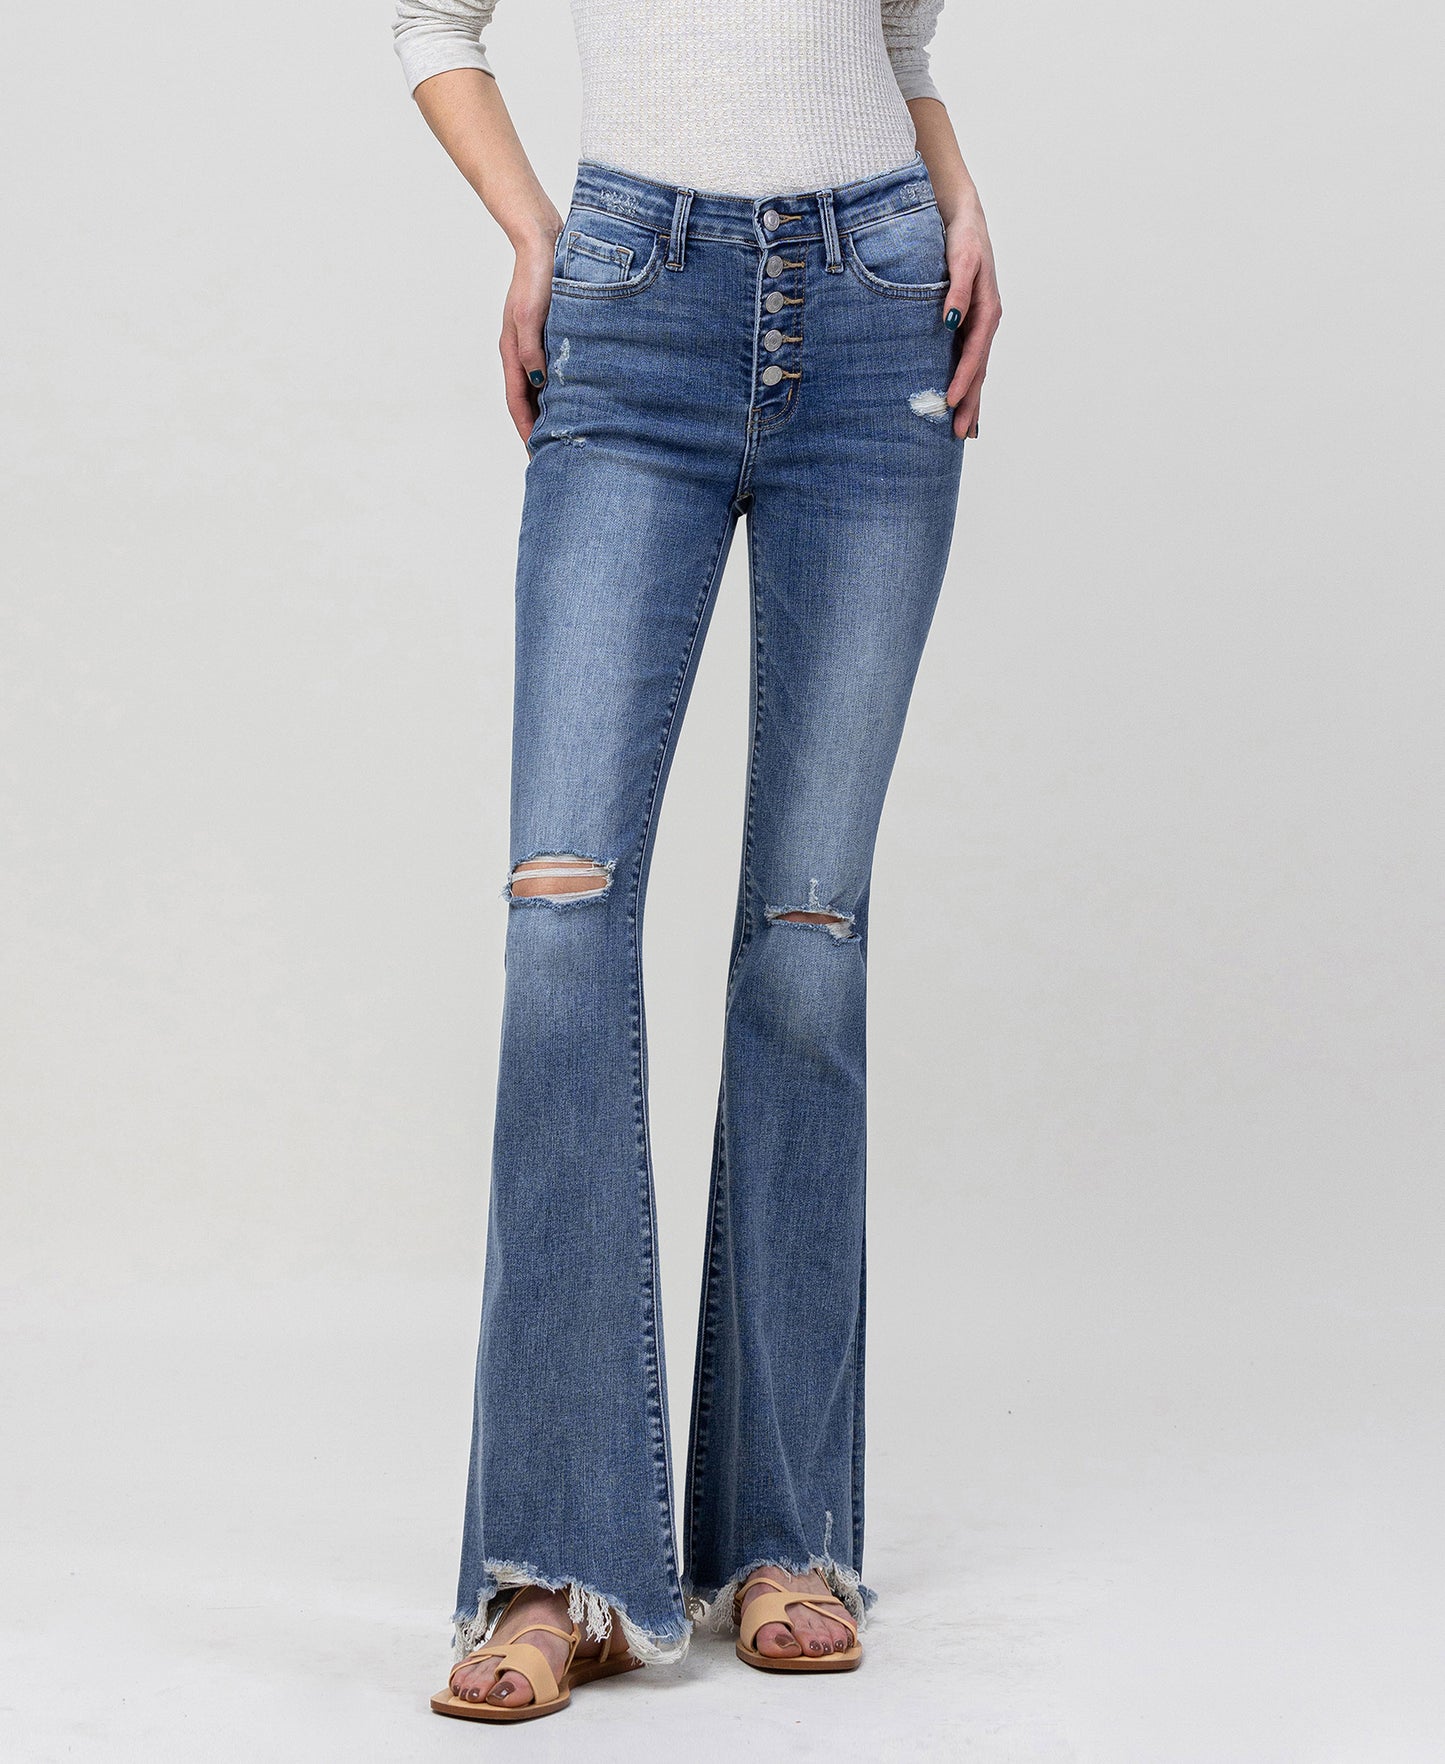 Lisa Jeans